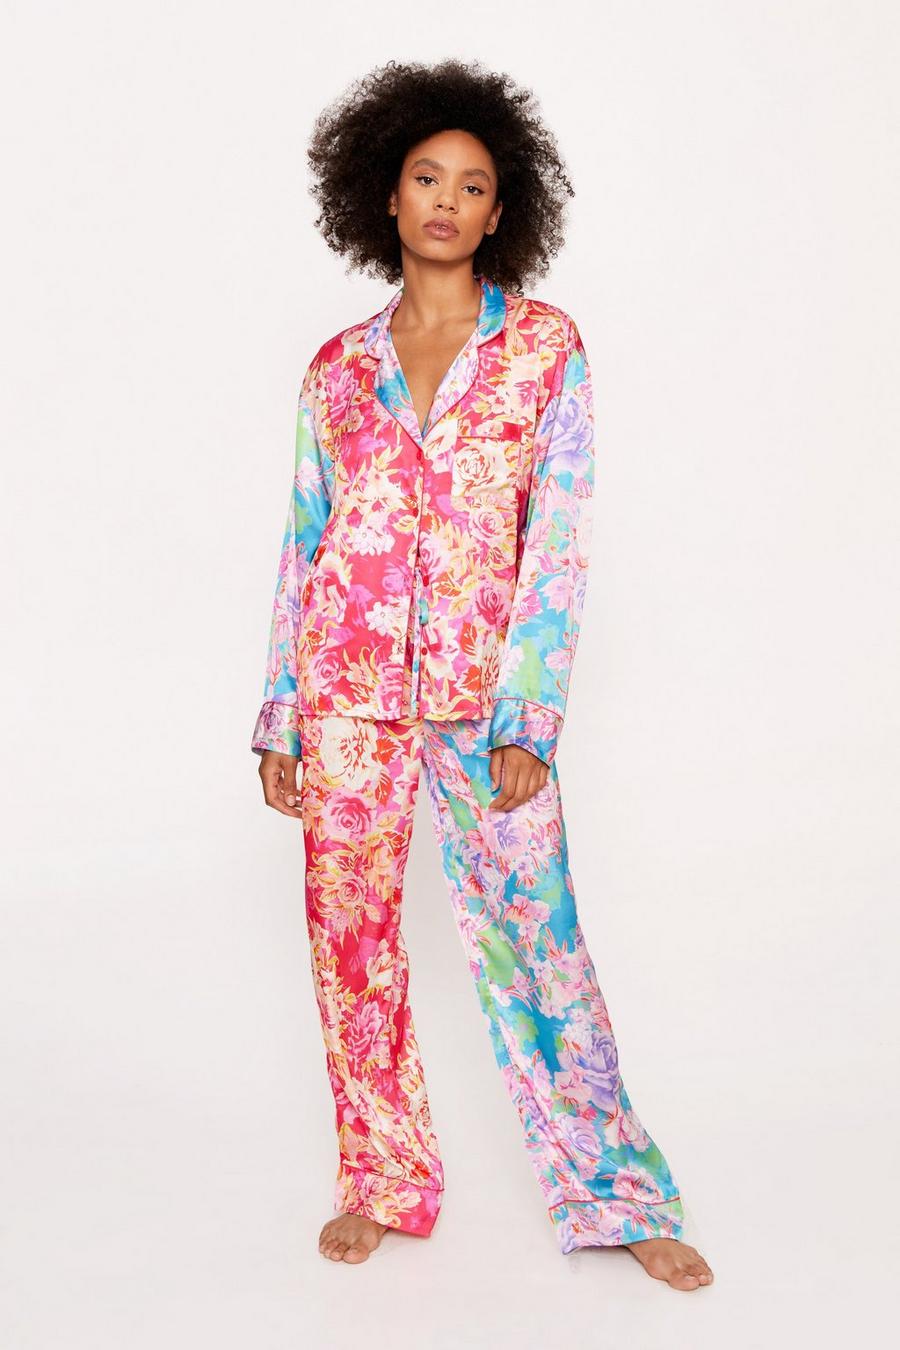 Hot pink Satin Floral Print Colour Block Pyjama Trousers Set